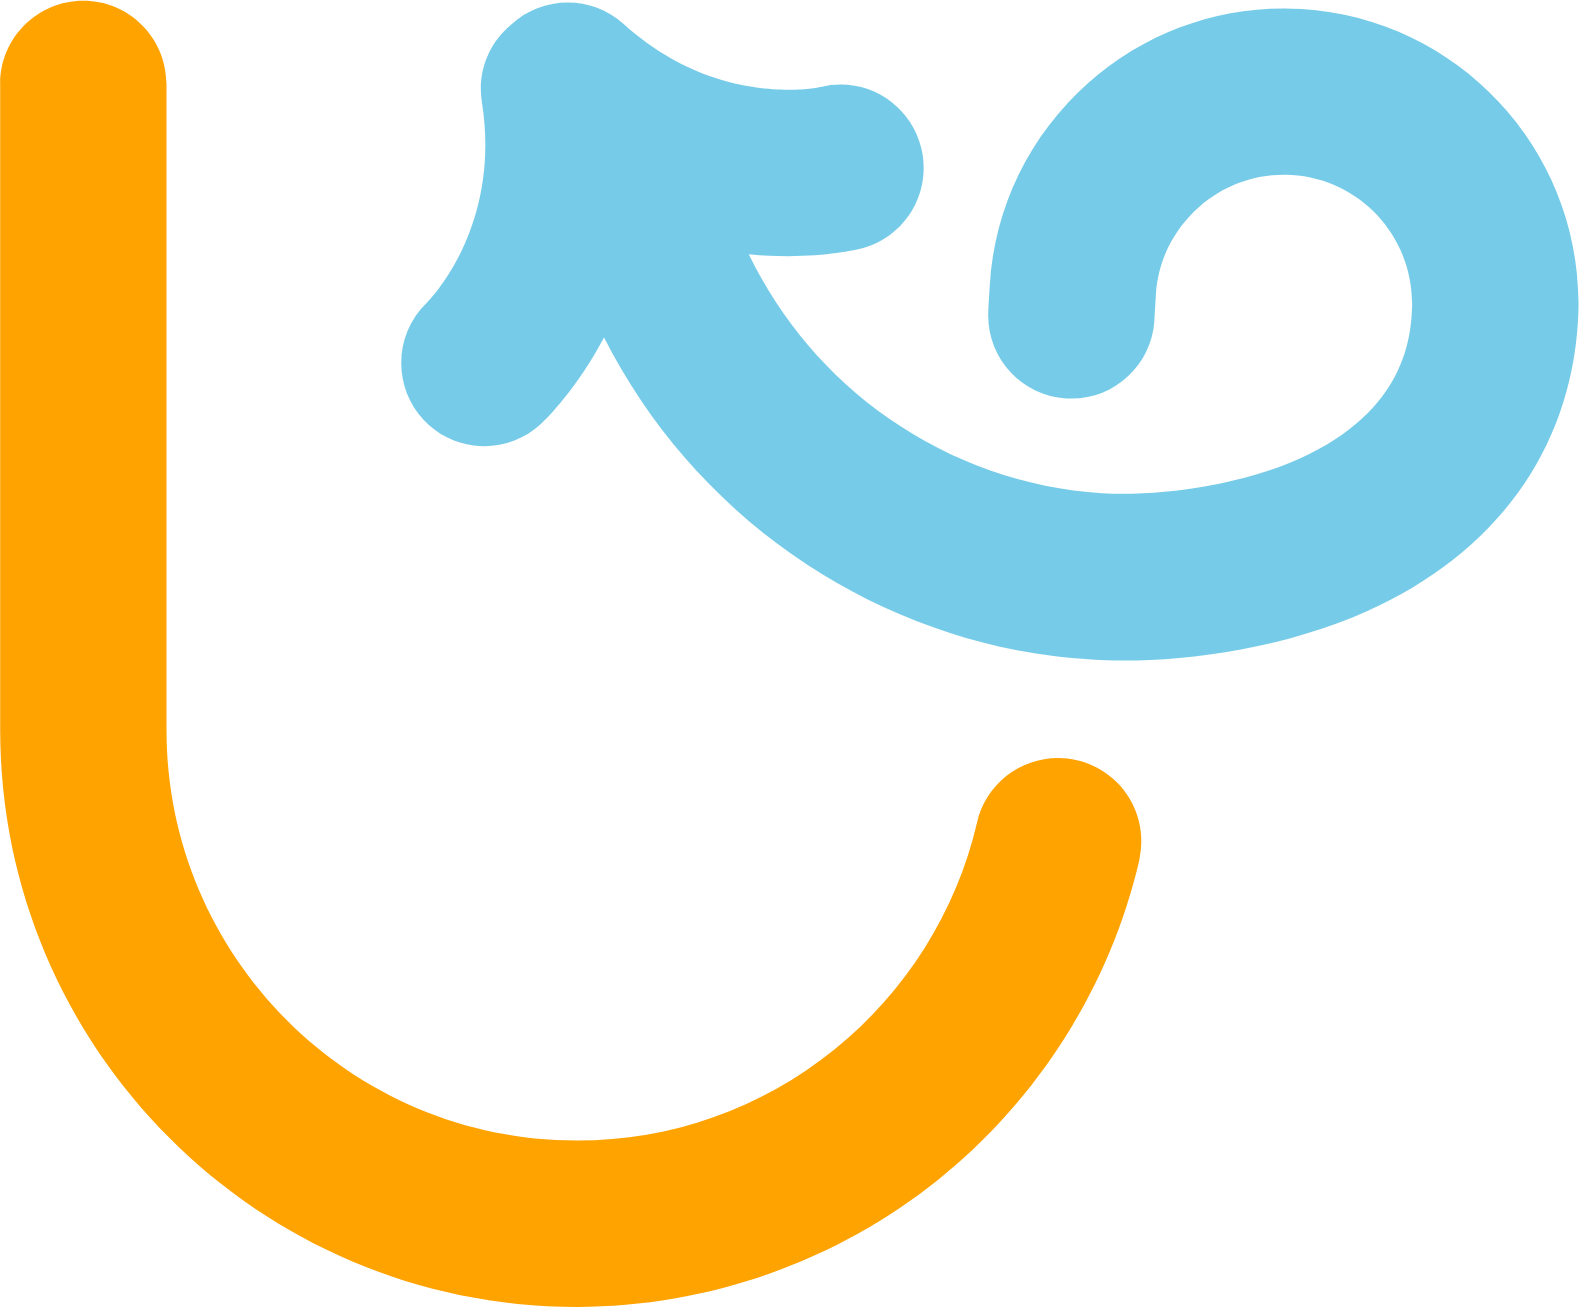 Upexi logo (PNG transparent)